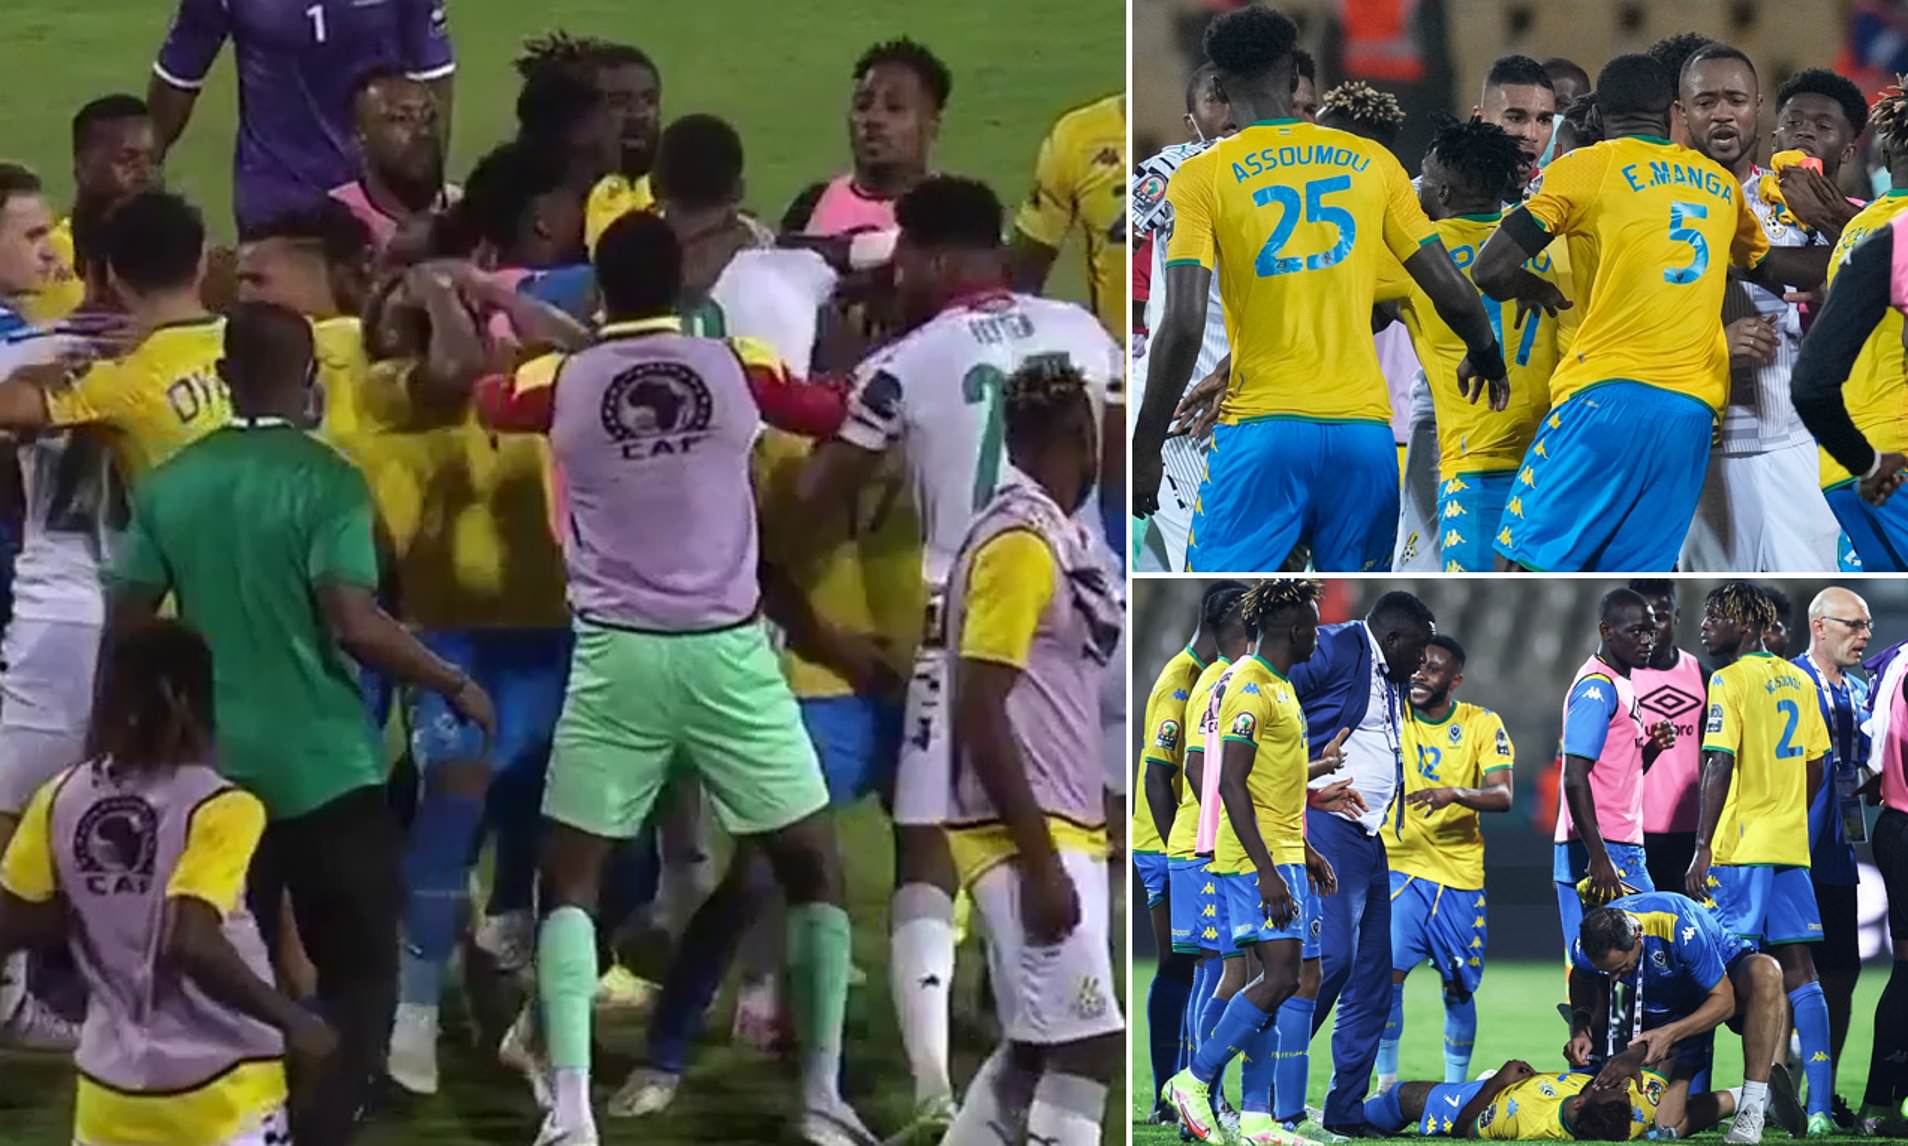 Cầu thủ Ghana đấm người tại CAN 2022 nhận án phạt treo giò 3 trận - Ảnh 1